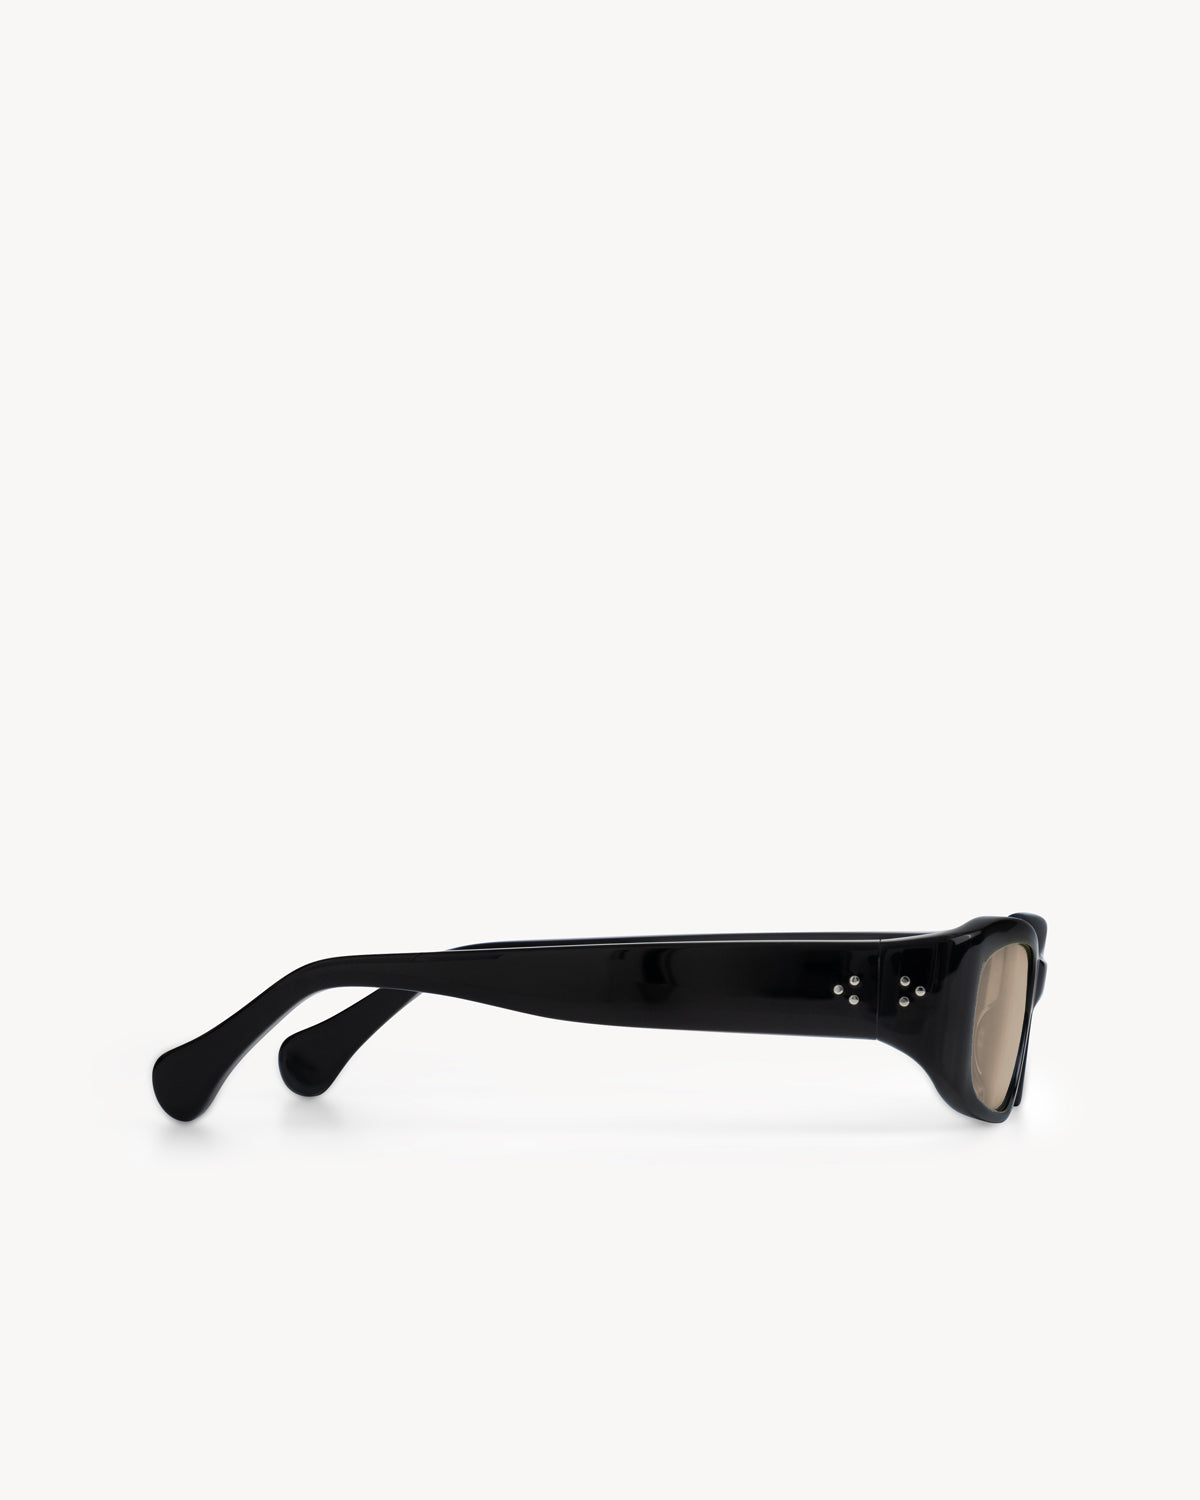 Port Tanger Leila Sunglasses in Black Acetate and Amber Lenses 4